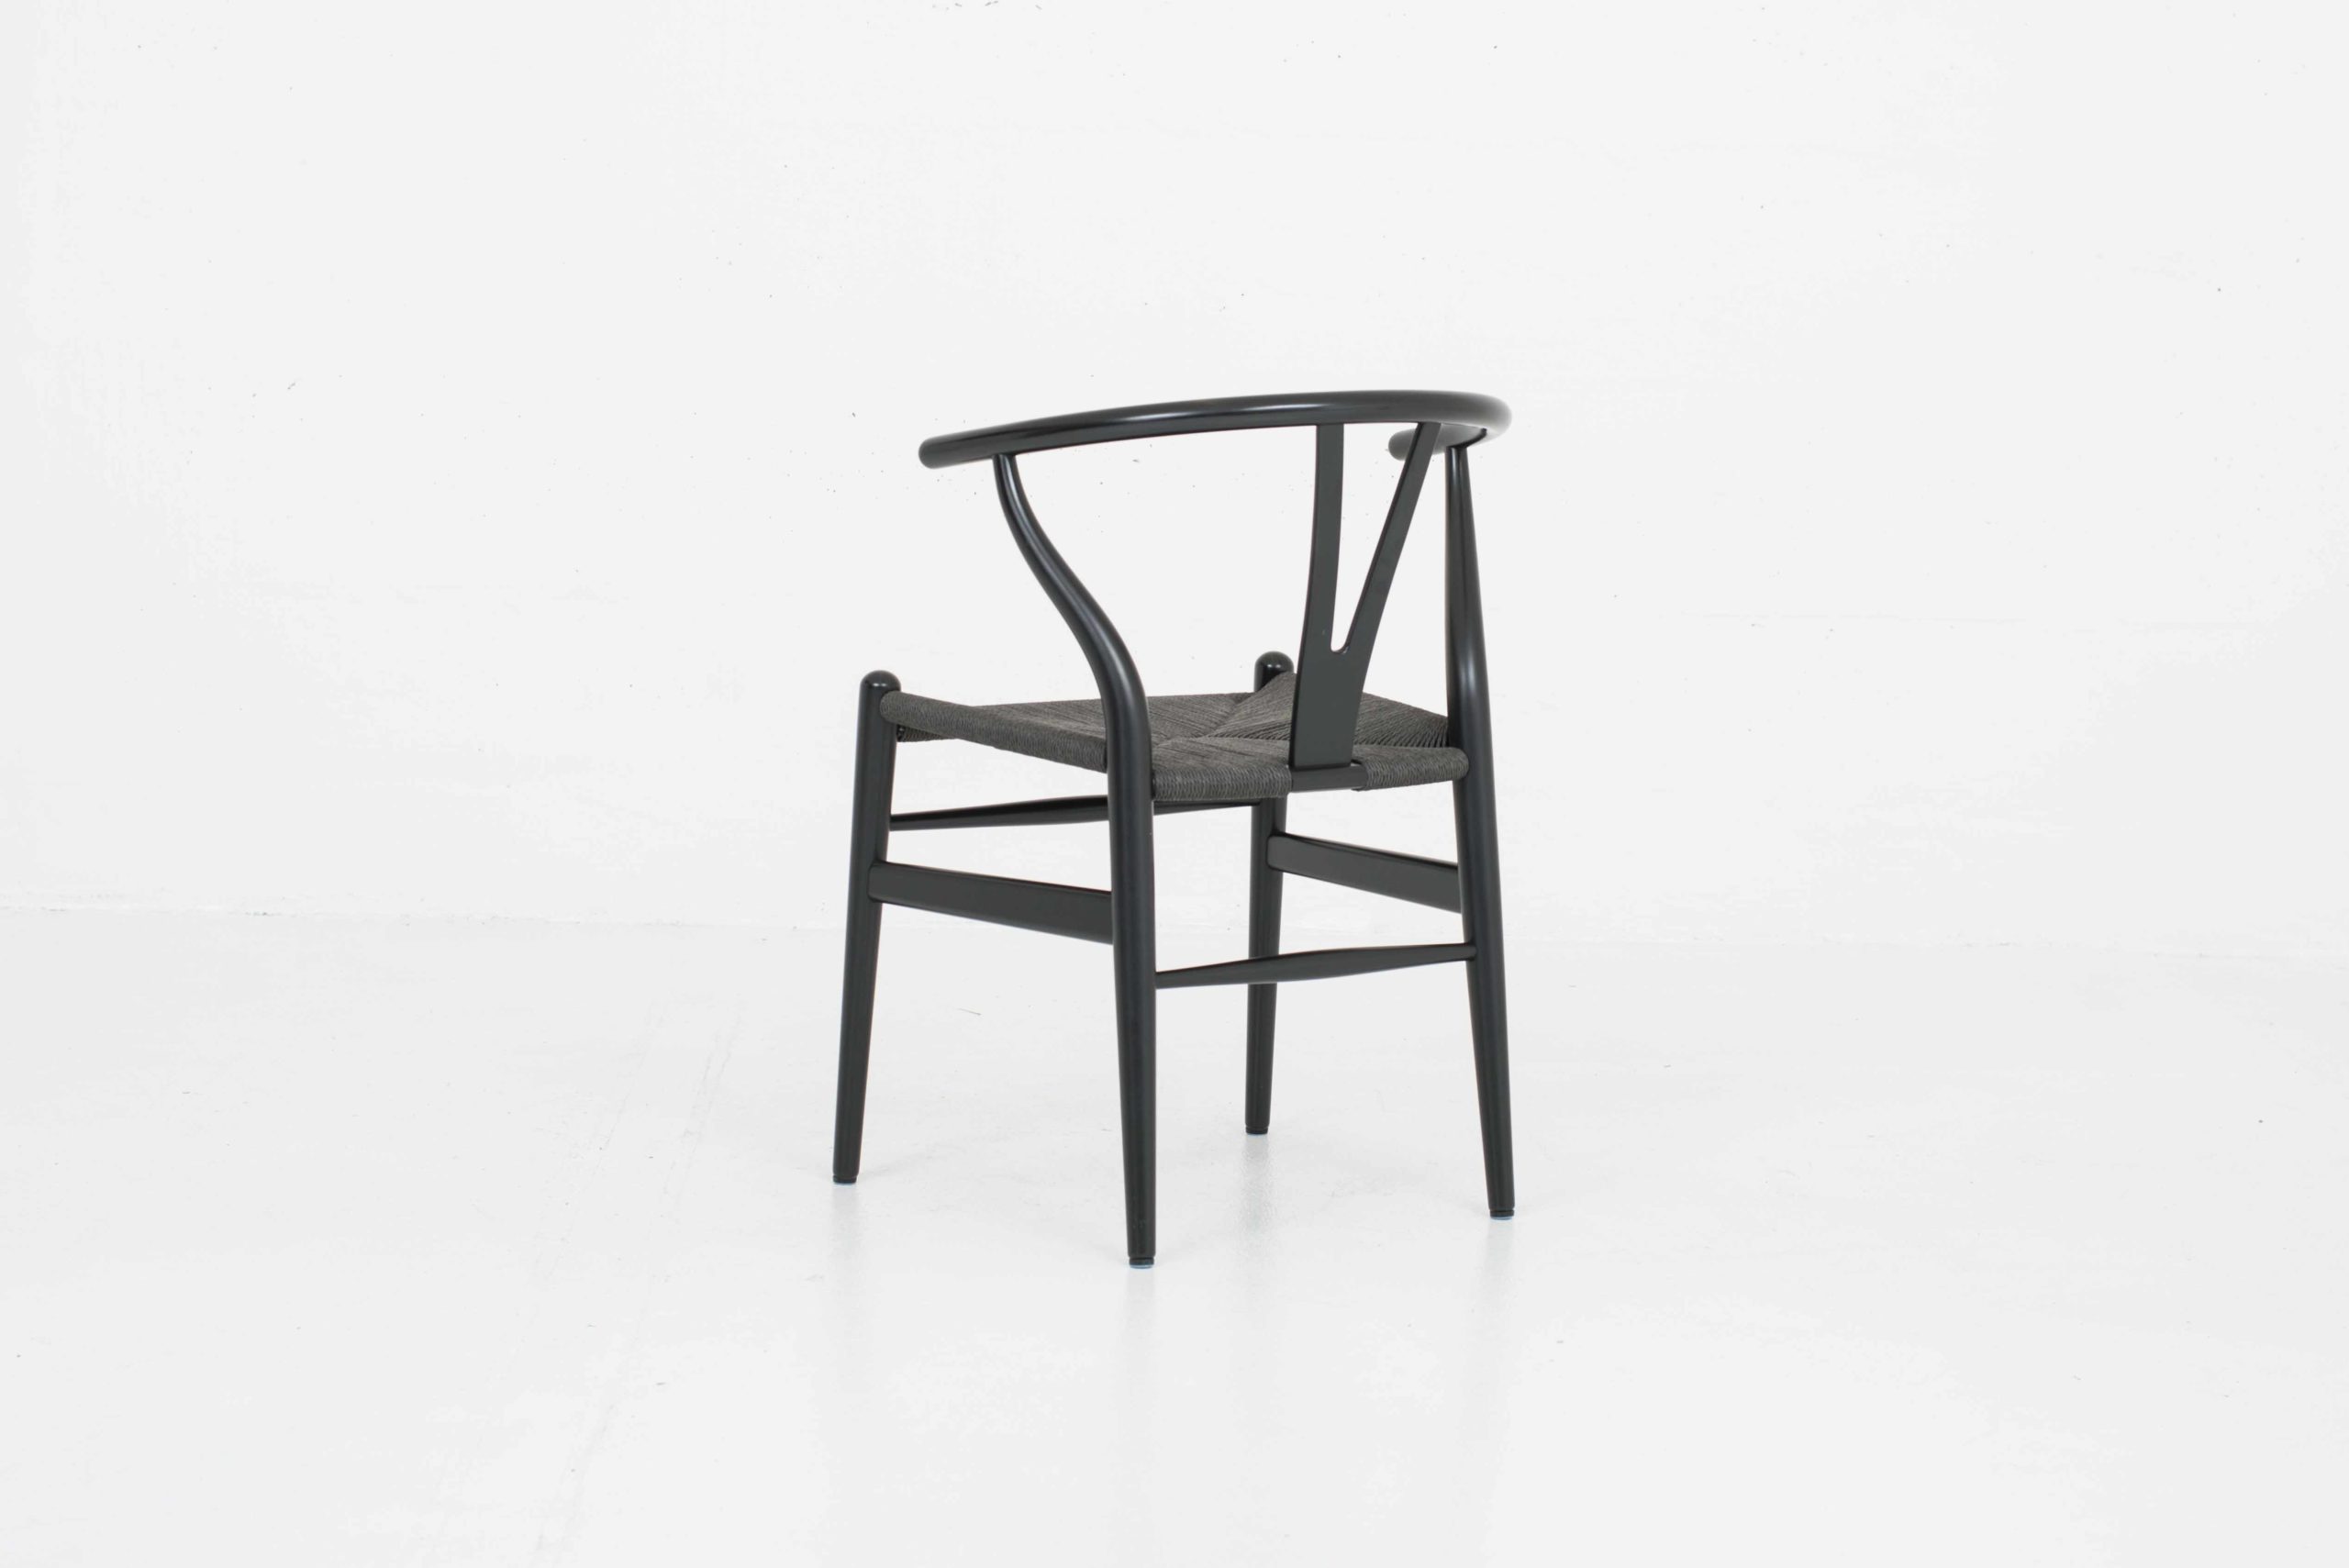 Hans J. Wegner Wishbone Chair von Carl Hansen &amp; Søn, im Viererset-4